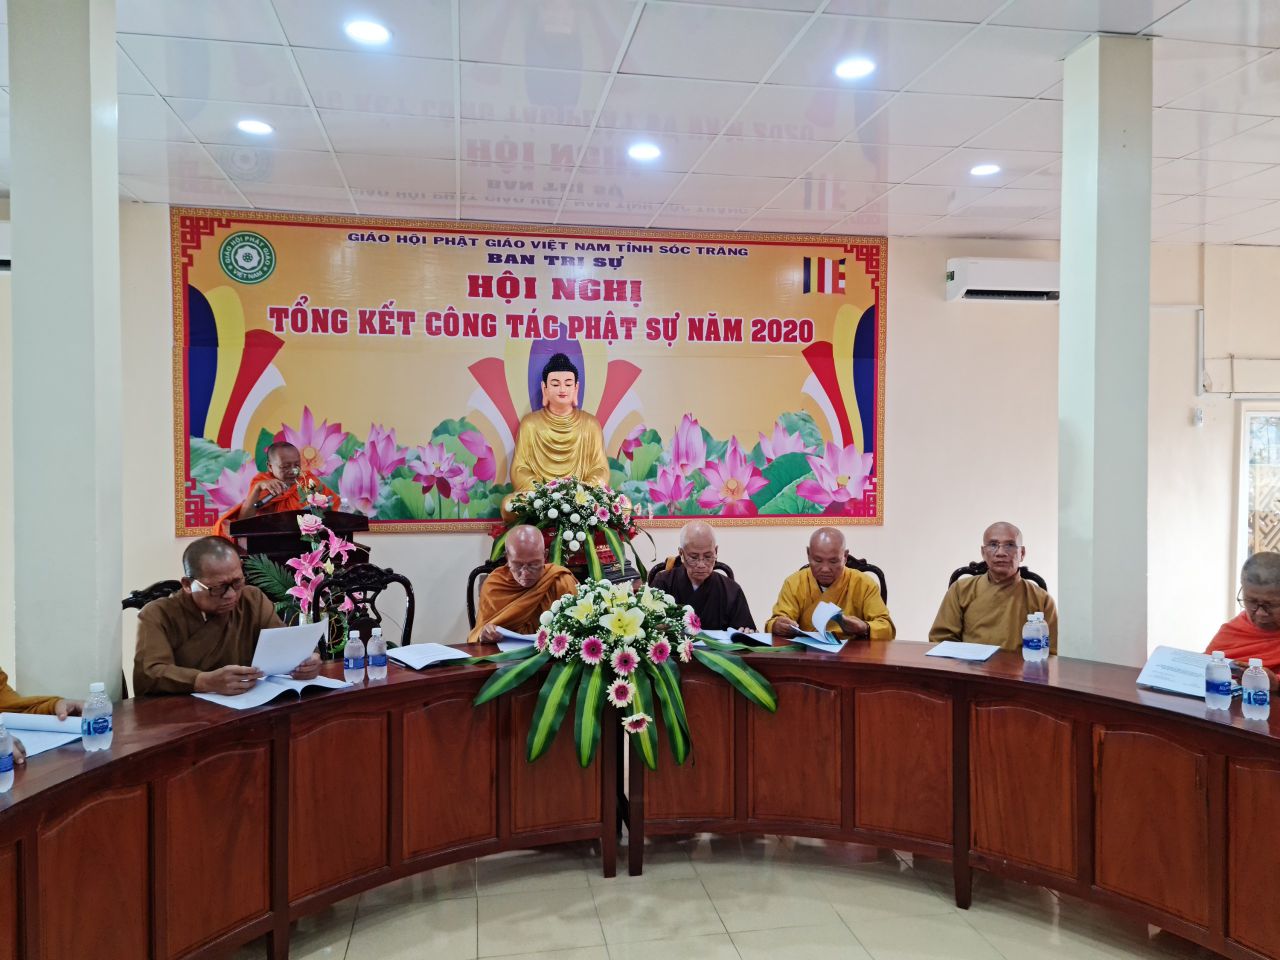 Sóc Trăng: Phật giáo tỉnh tổ chức Hội nghị Tổng kết công tác Phật sự năm 2020